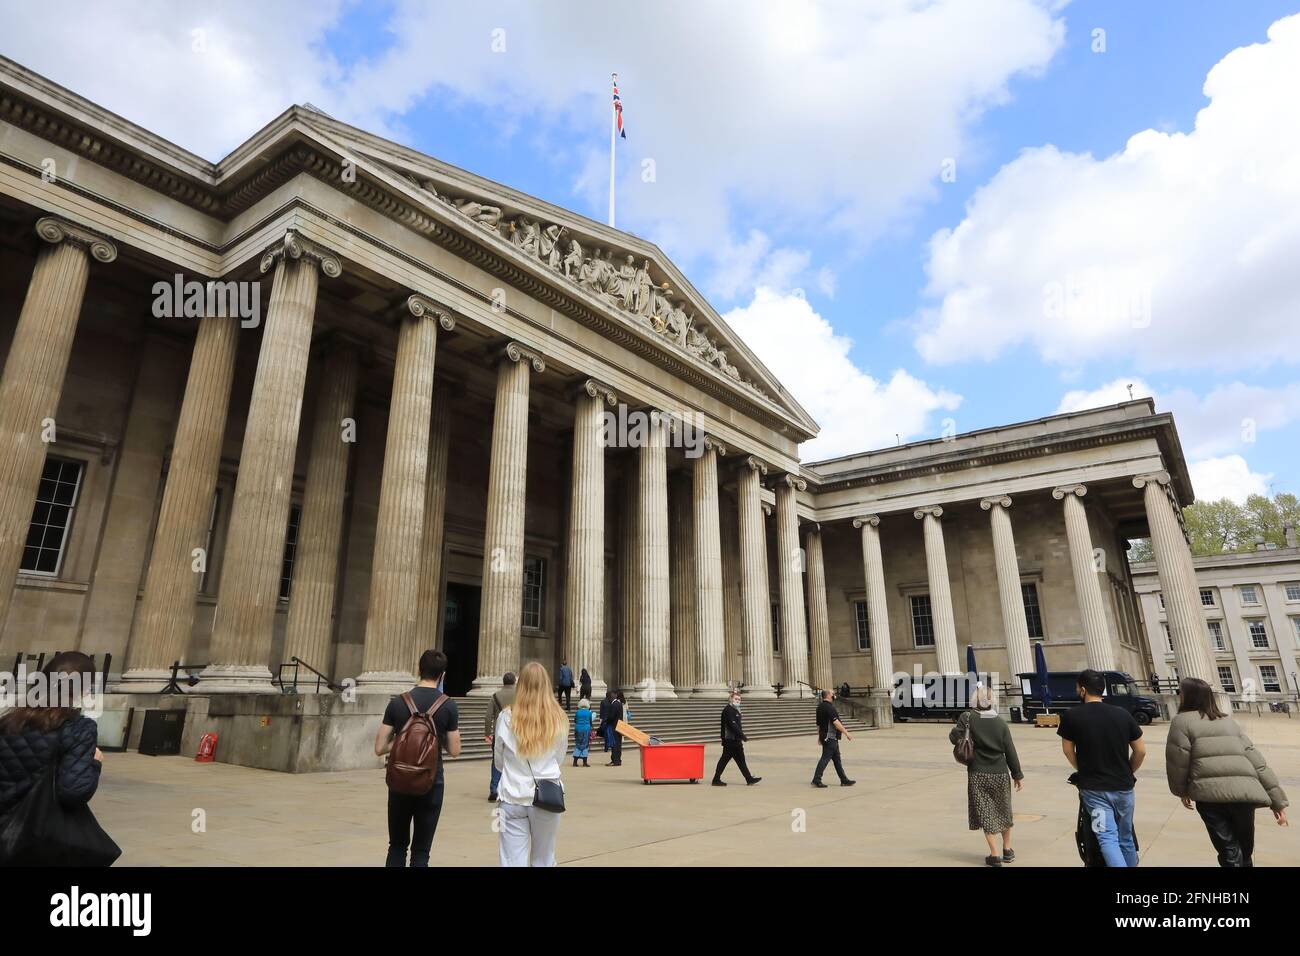 Londra, Regno Unito, 17 maggio 2021. I musei possono riaprirsi il 17 maggio 2021, come parte della prossima fase della roadmap del governo. Molti visitatori sono stati felici di visitare nuovamente il British Museum, indossando maschere e seguendo un sistema a senso unico. Monica Wells/Alamy Live News Foto Stock